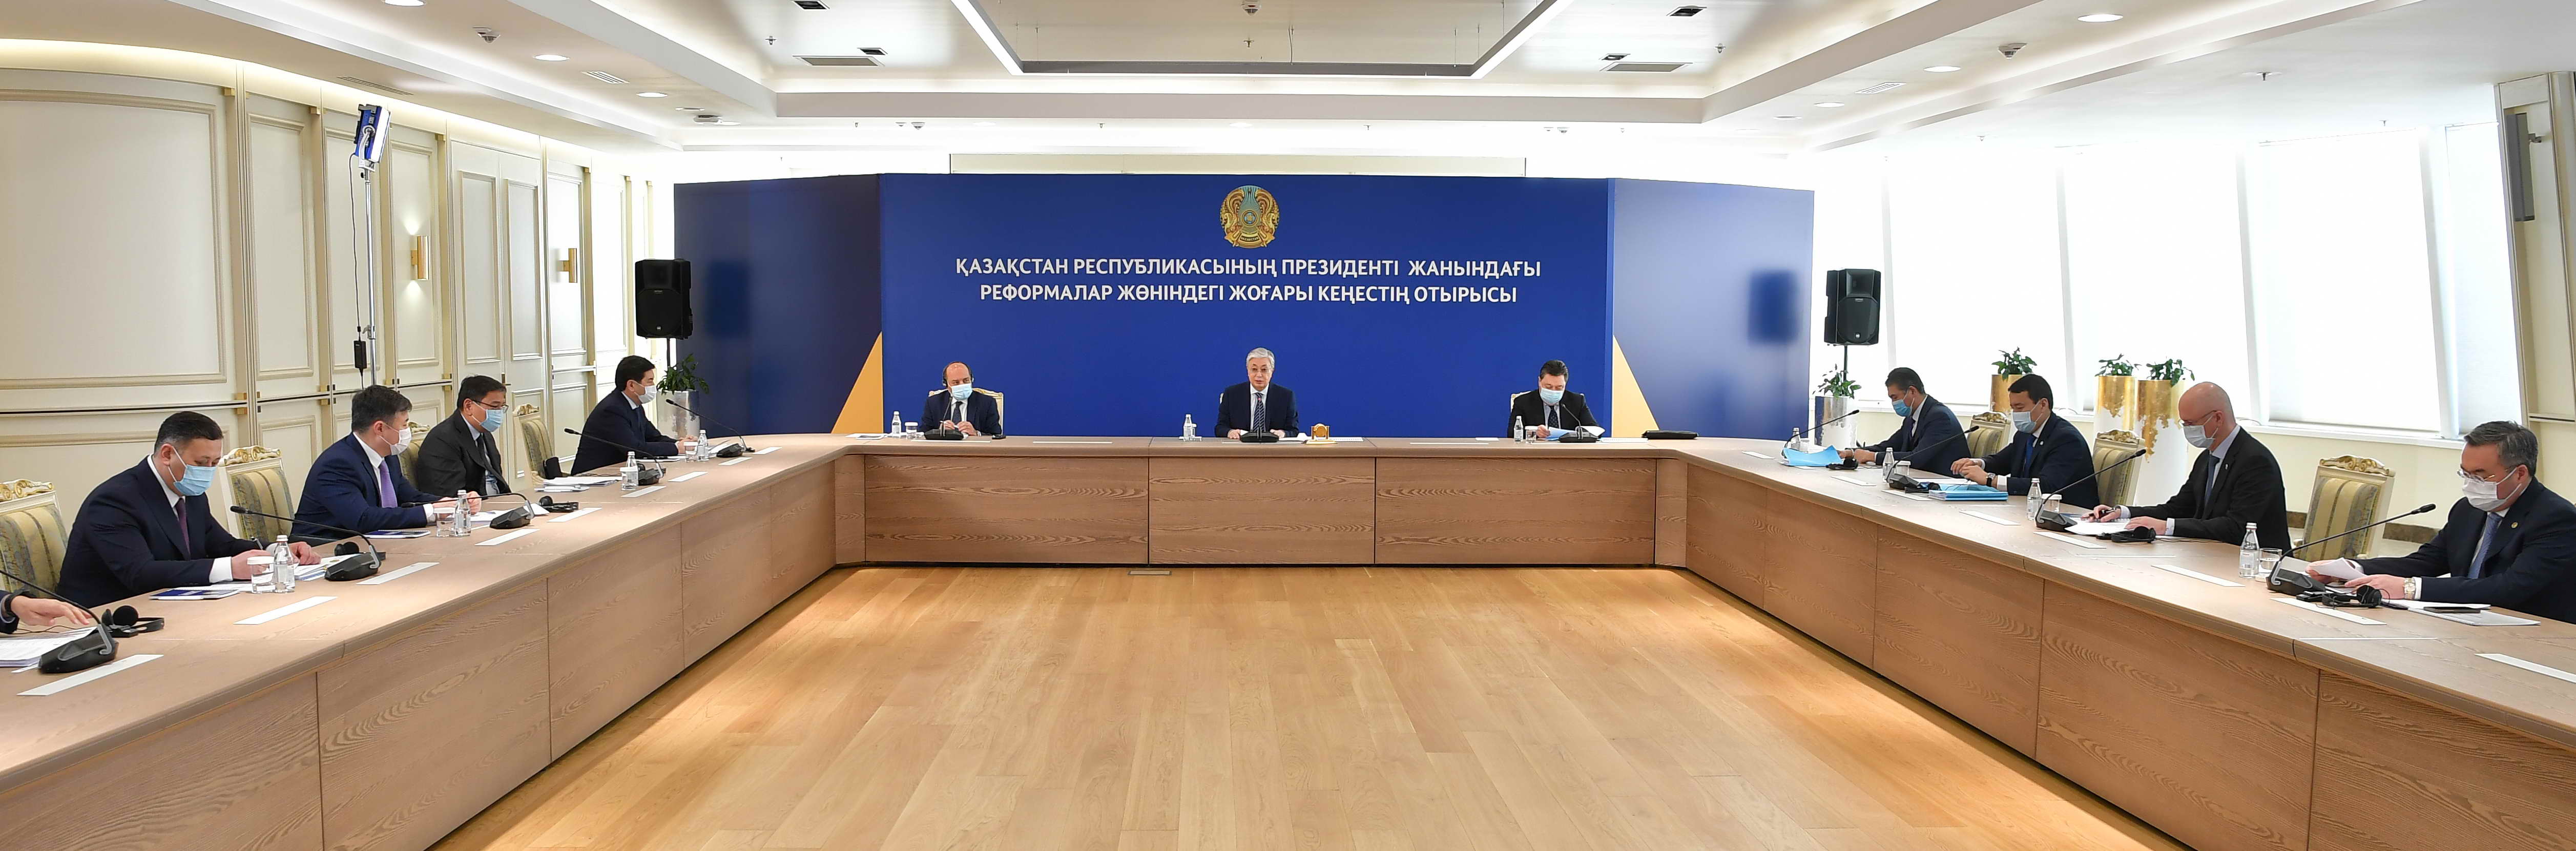 Касым-Жомарт Токаев провел очередное заседание Высшего cовета по реформам